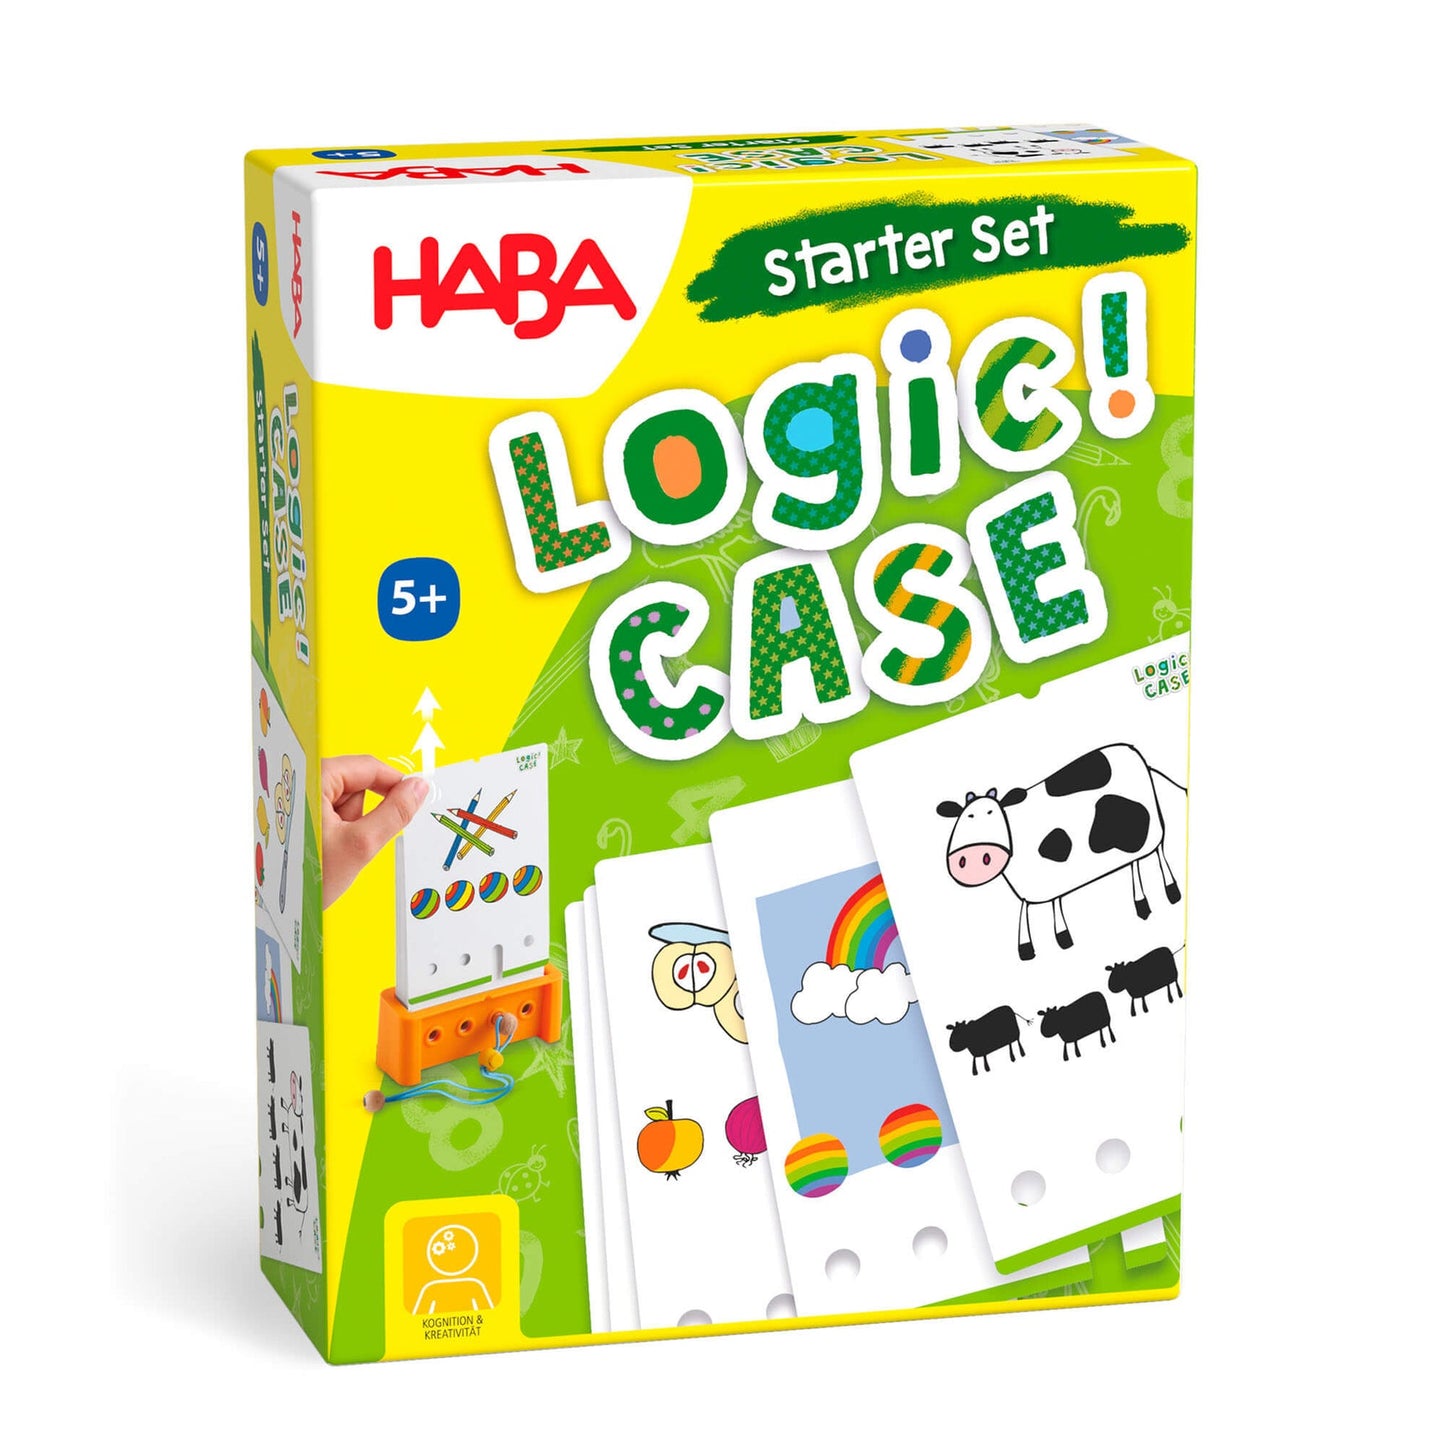 Logic! Case Starter Set Ages 5+